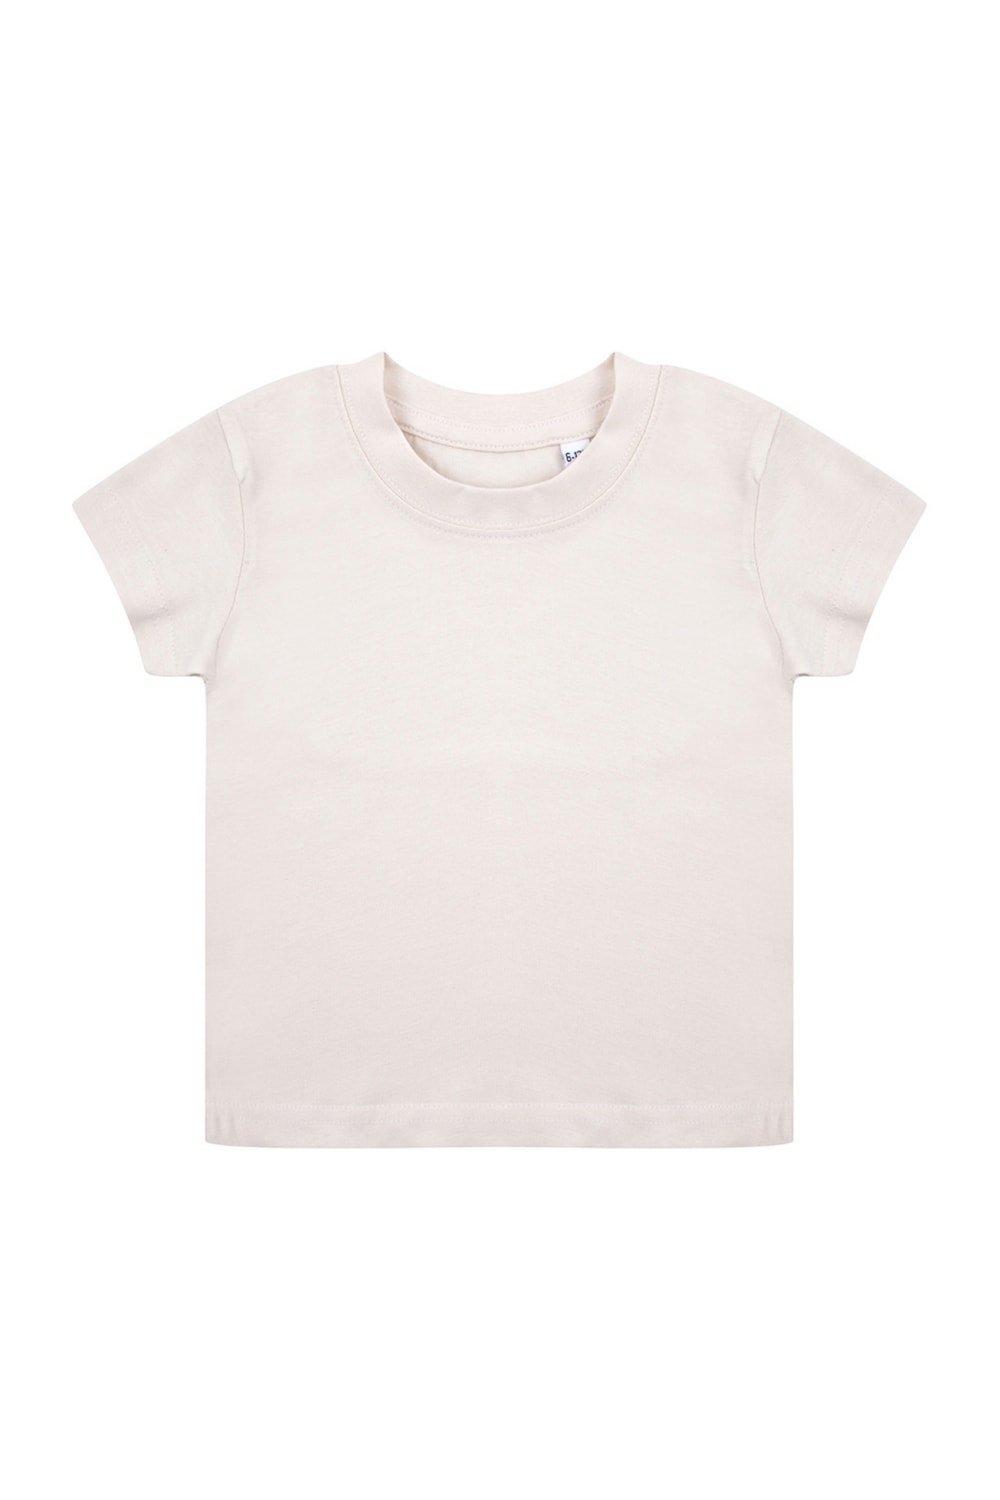 комплект одежды пижама для новорожденного 6 мес 62 68 см Органическая футболка Larkwood, натуральный